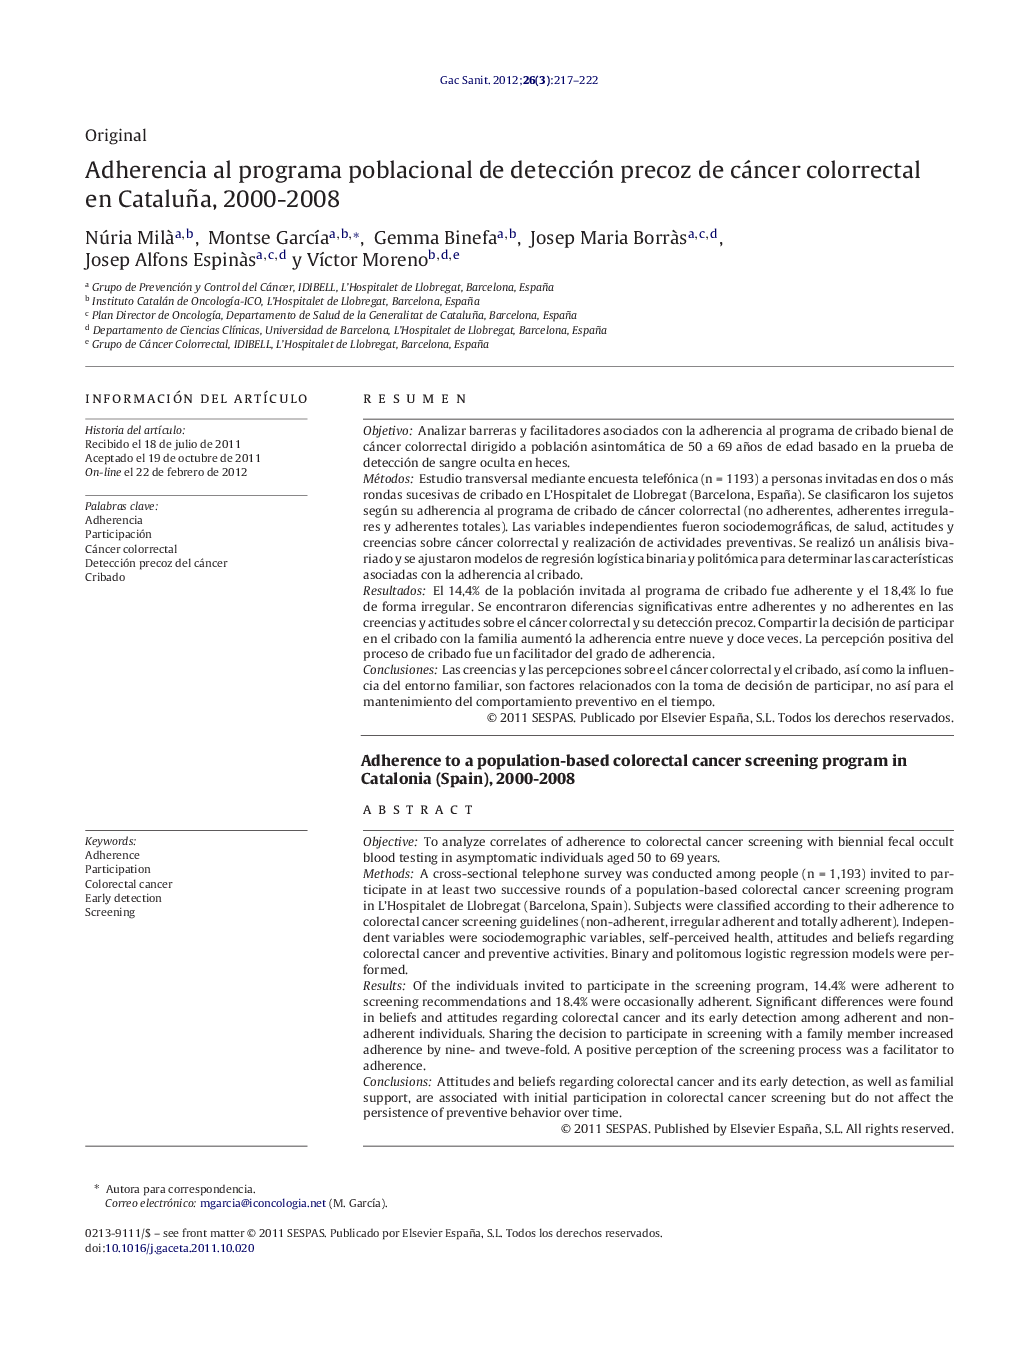 Adherencia al programa poblacional de detección precoz de cáncer colorrectal en Cataluña, 2000-2008